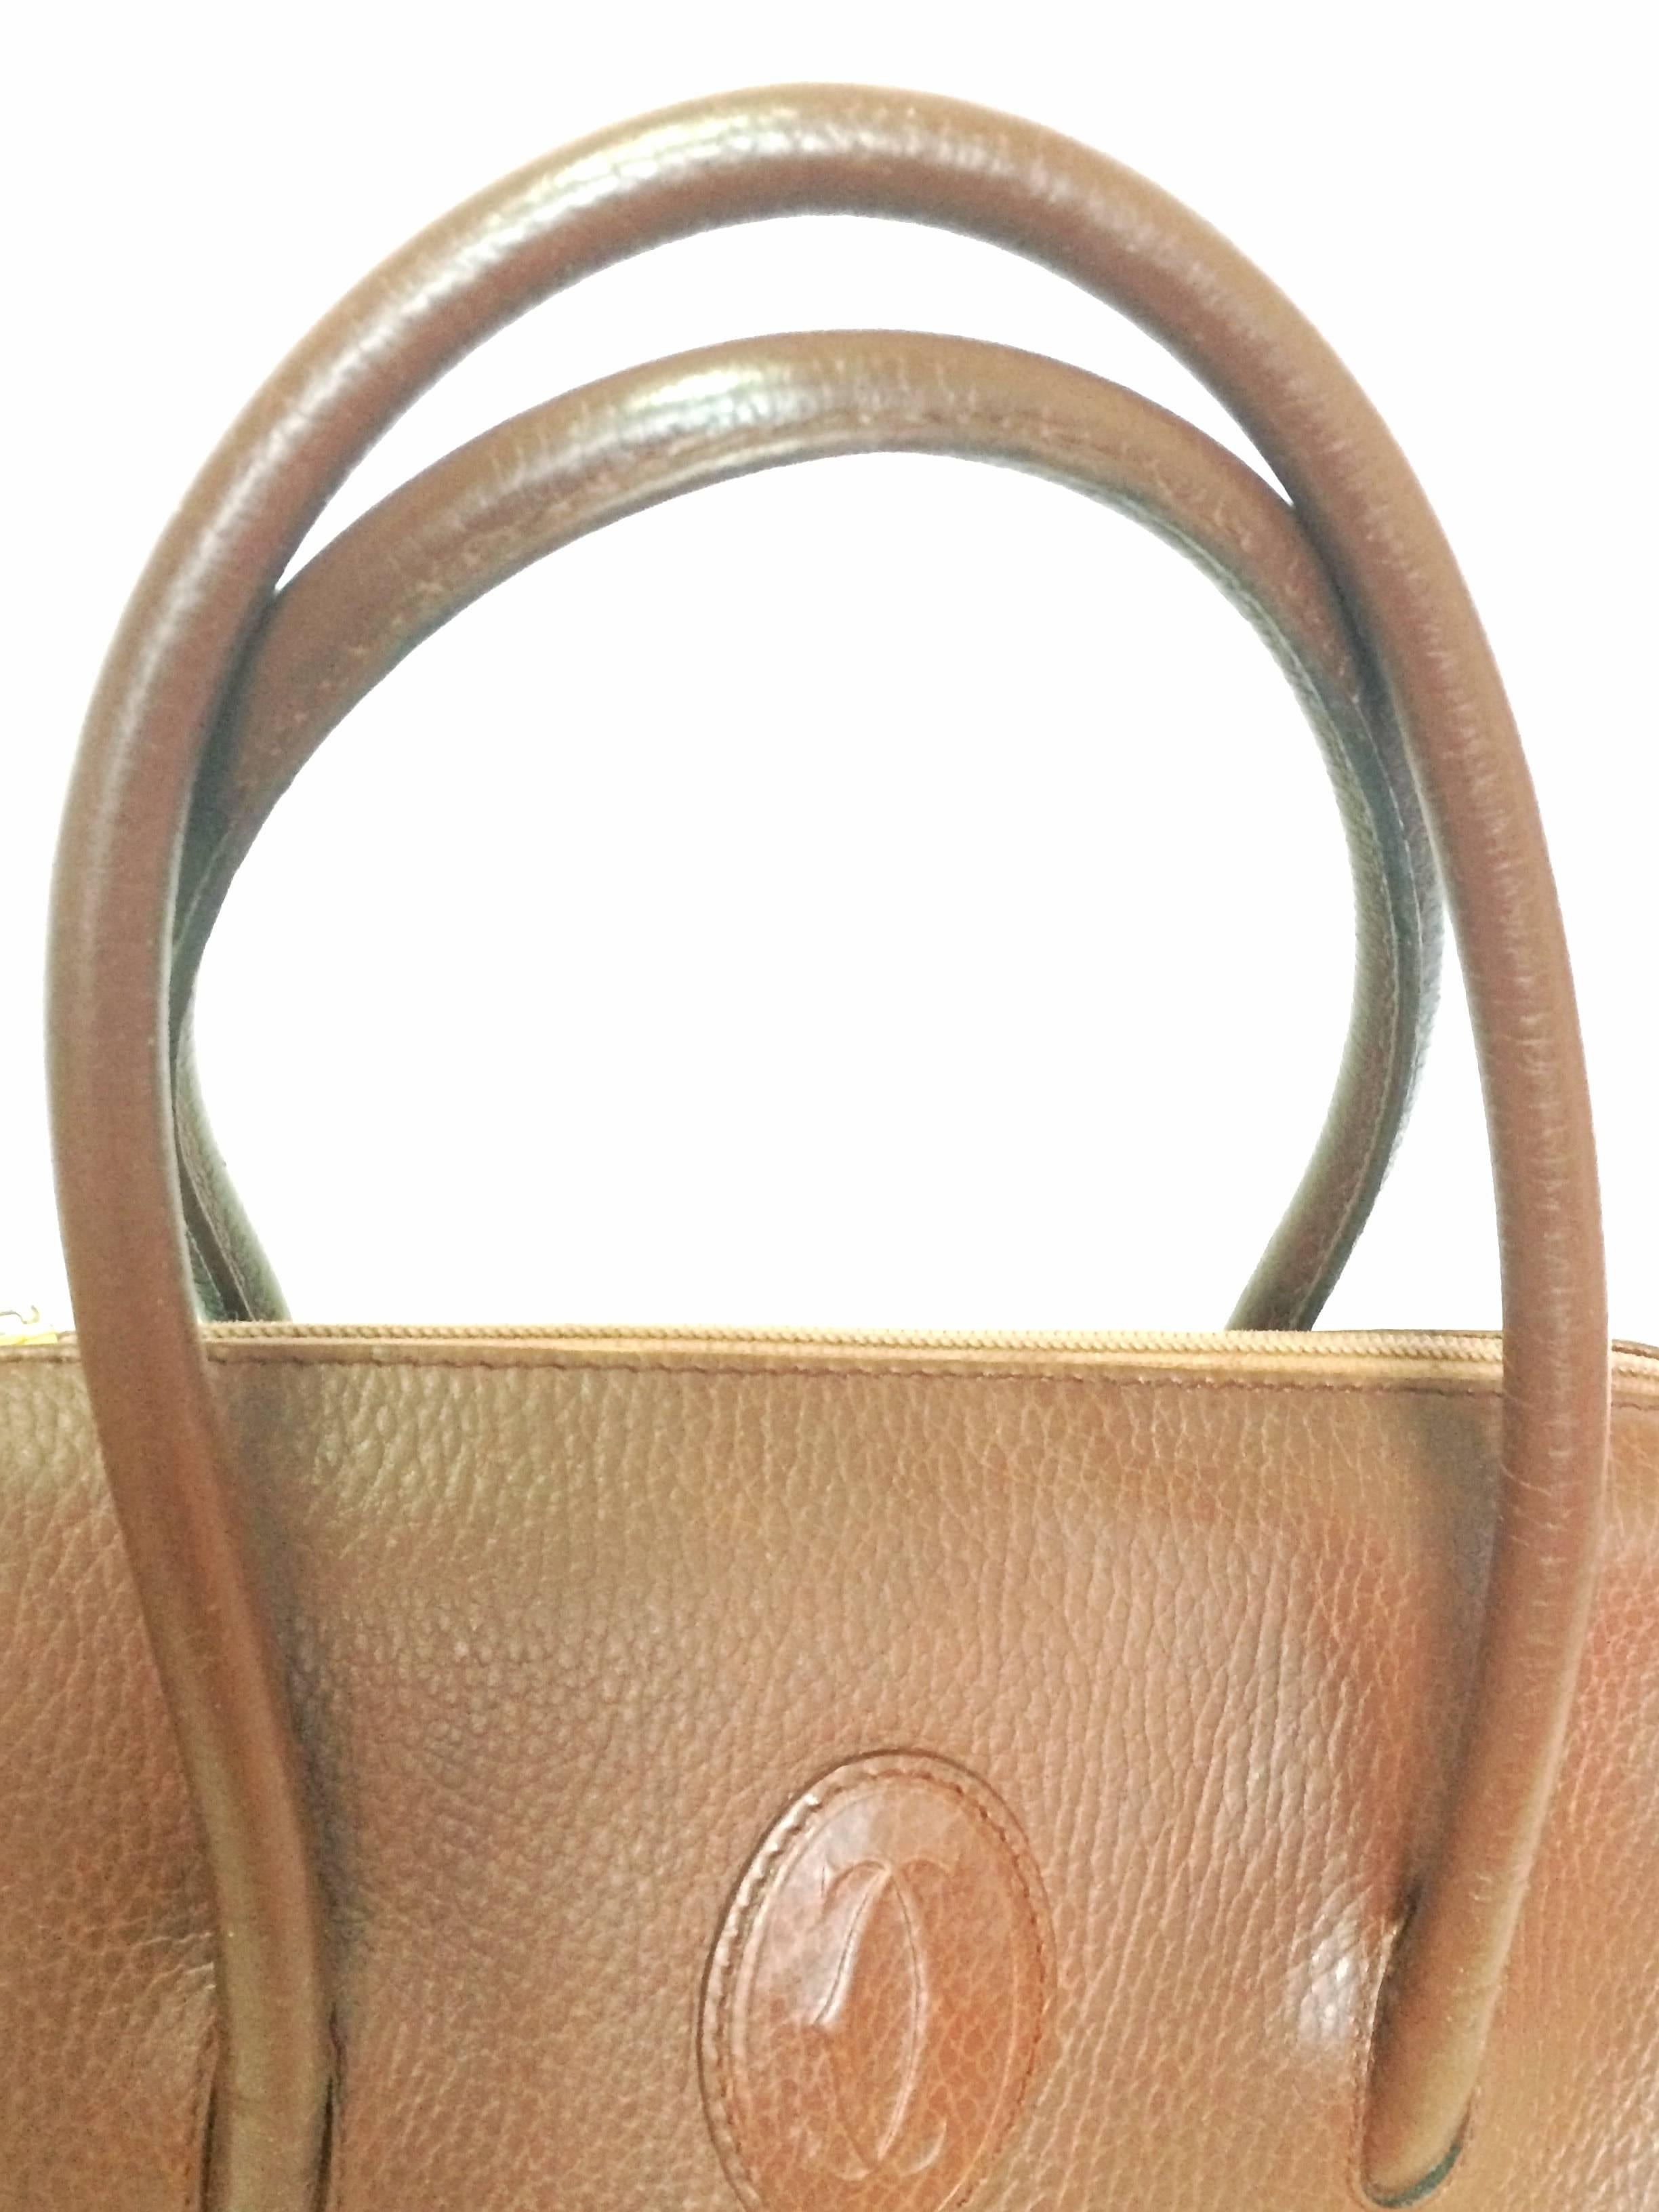 Vintage Cartier classic brown leather handbag with logo.  les must de Cartier 1